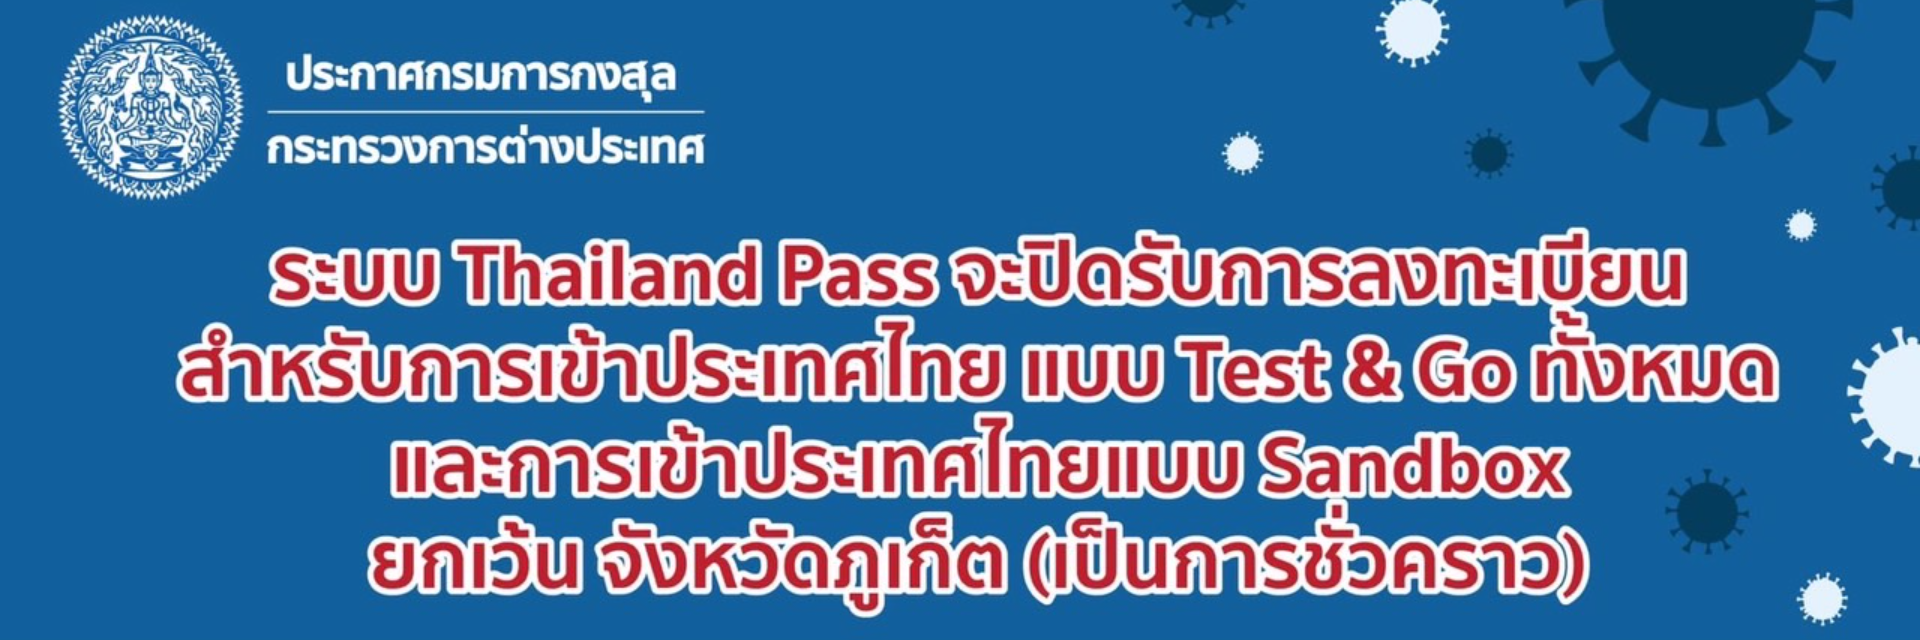 Thailand Pass ปิดรับการลงทะเบียนเข้าประเทศไทย